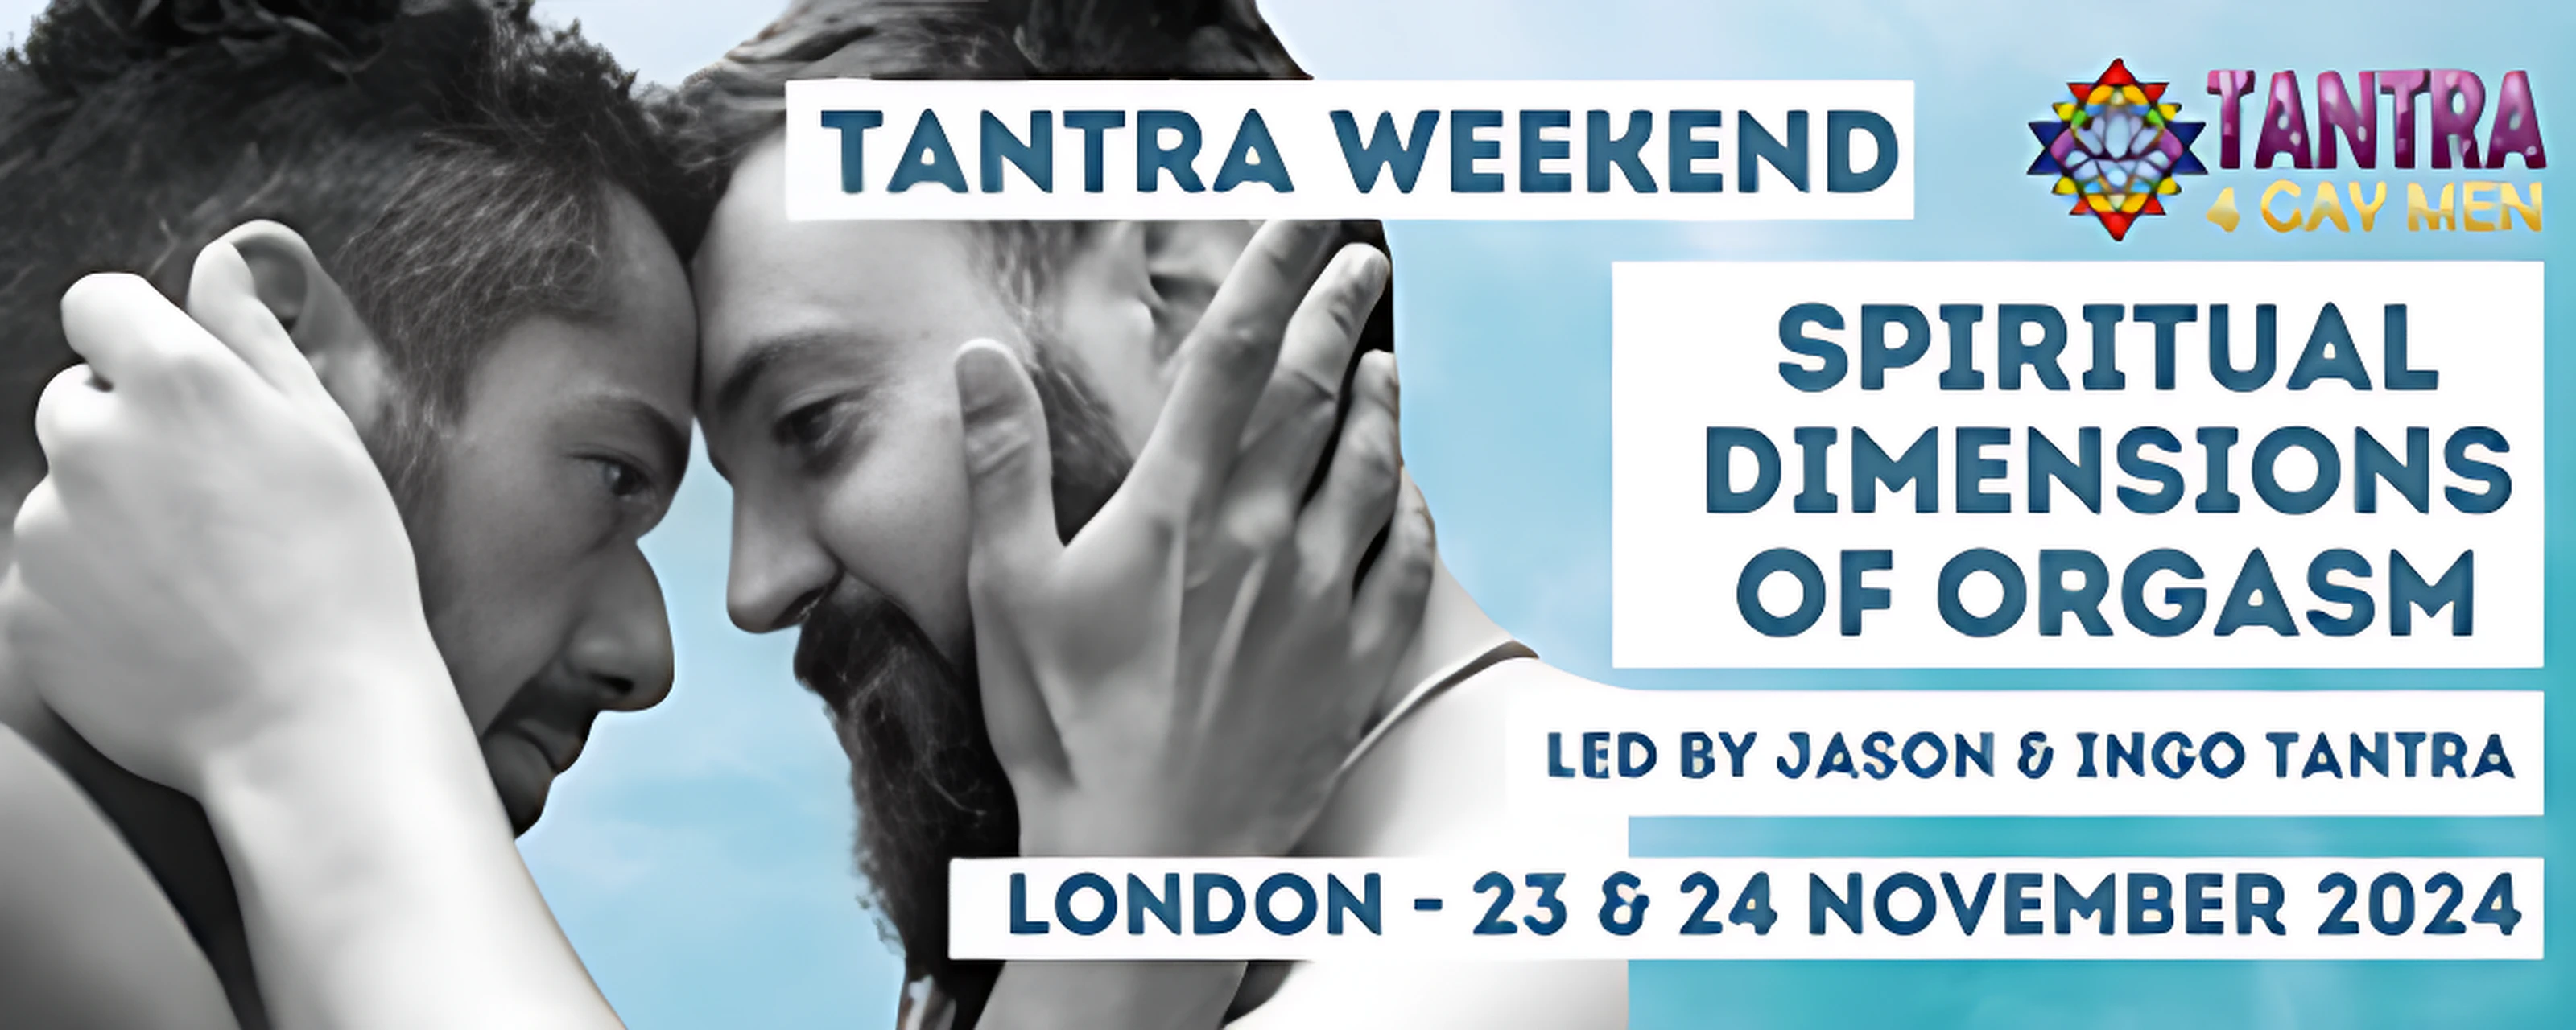 عطلة نهاية الأسبوع التانترا: الأبعاد الروحية للنشوة الجنسية